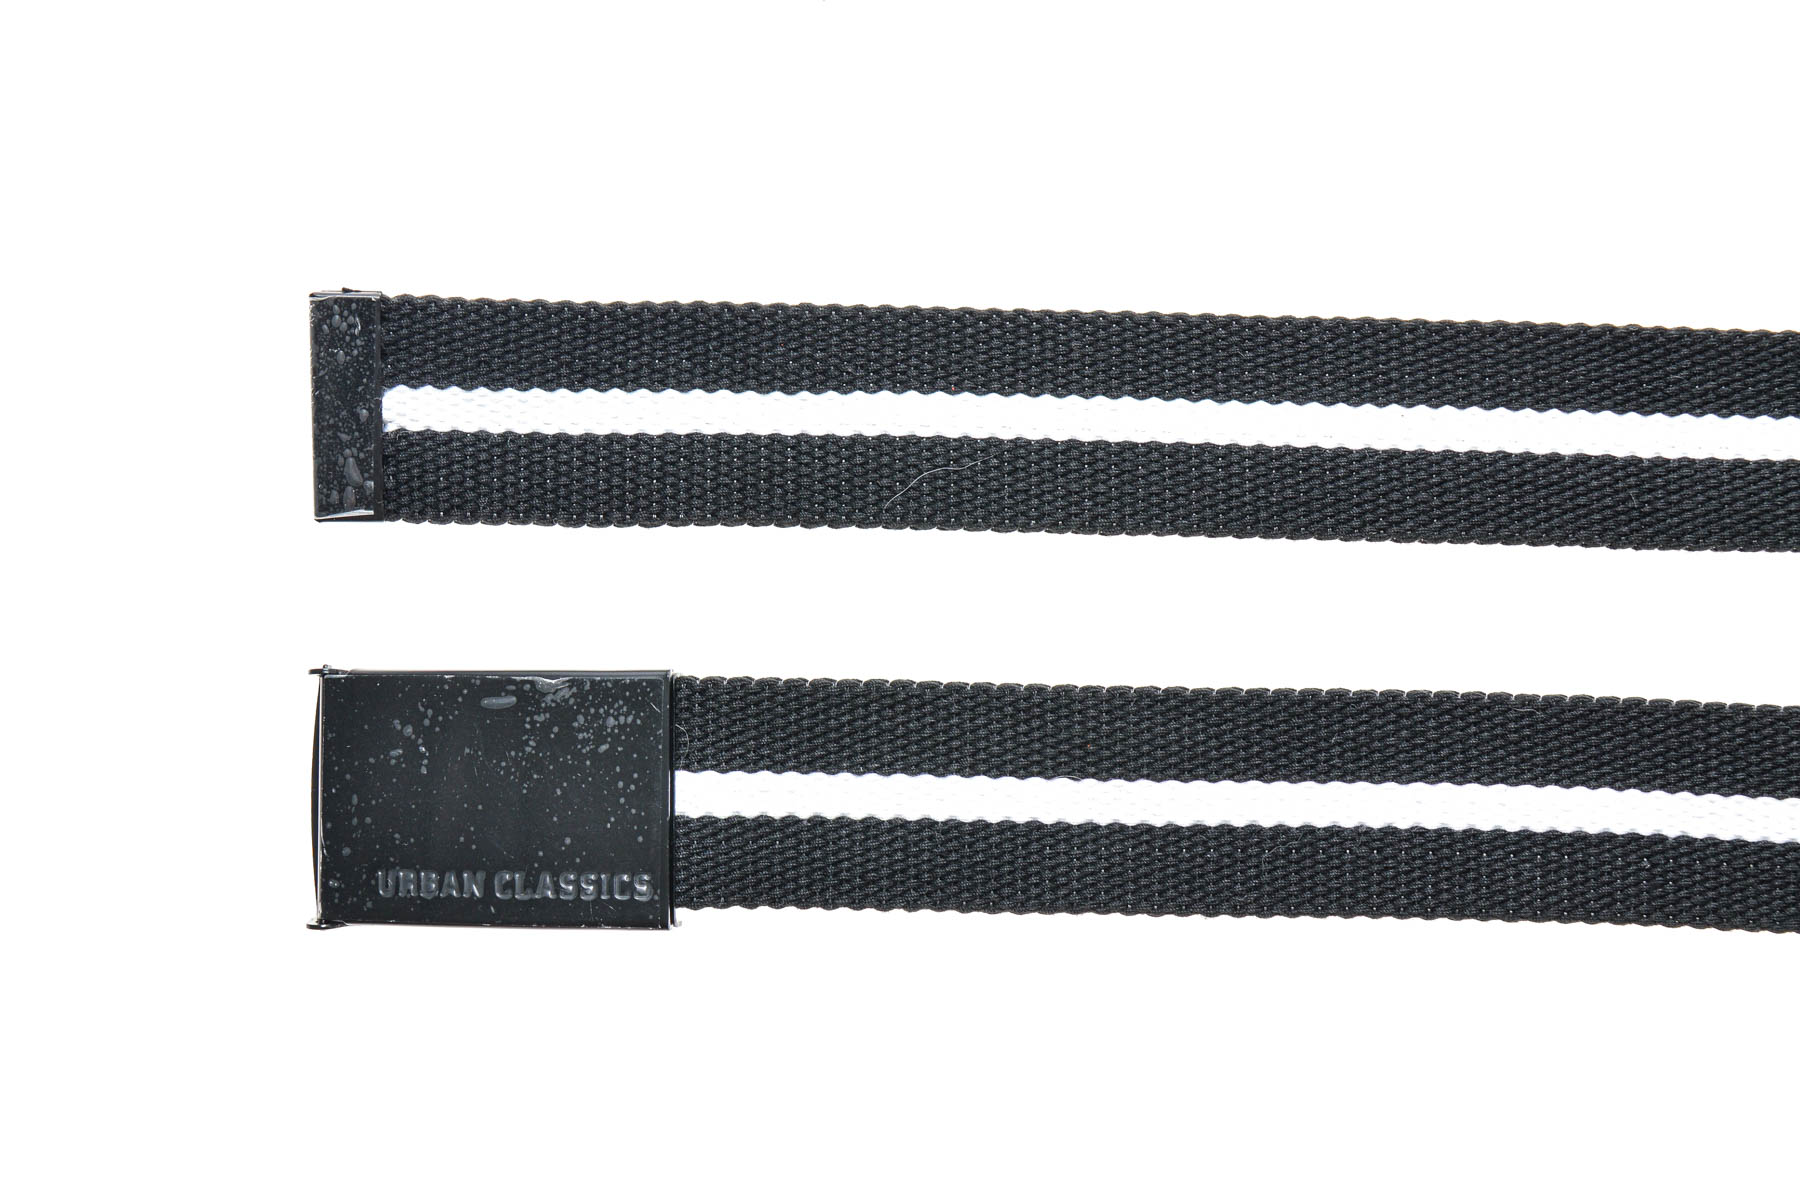 Ladies's belt - URBAN CLASSICS - 2